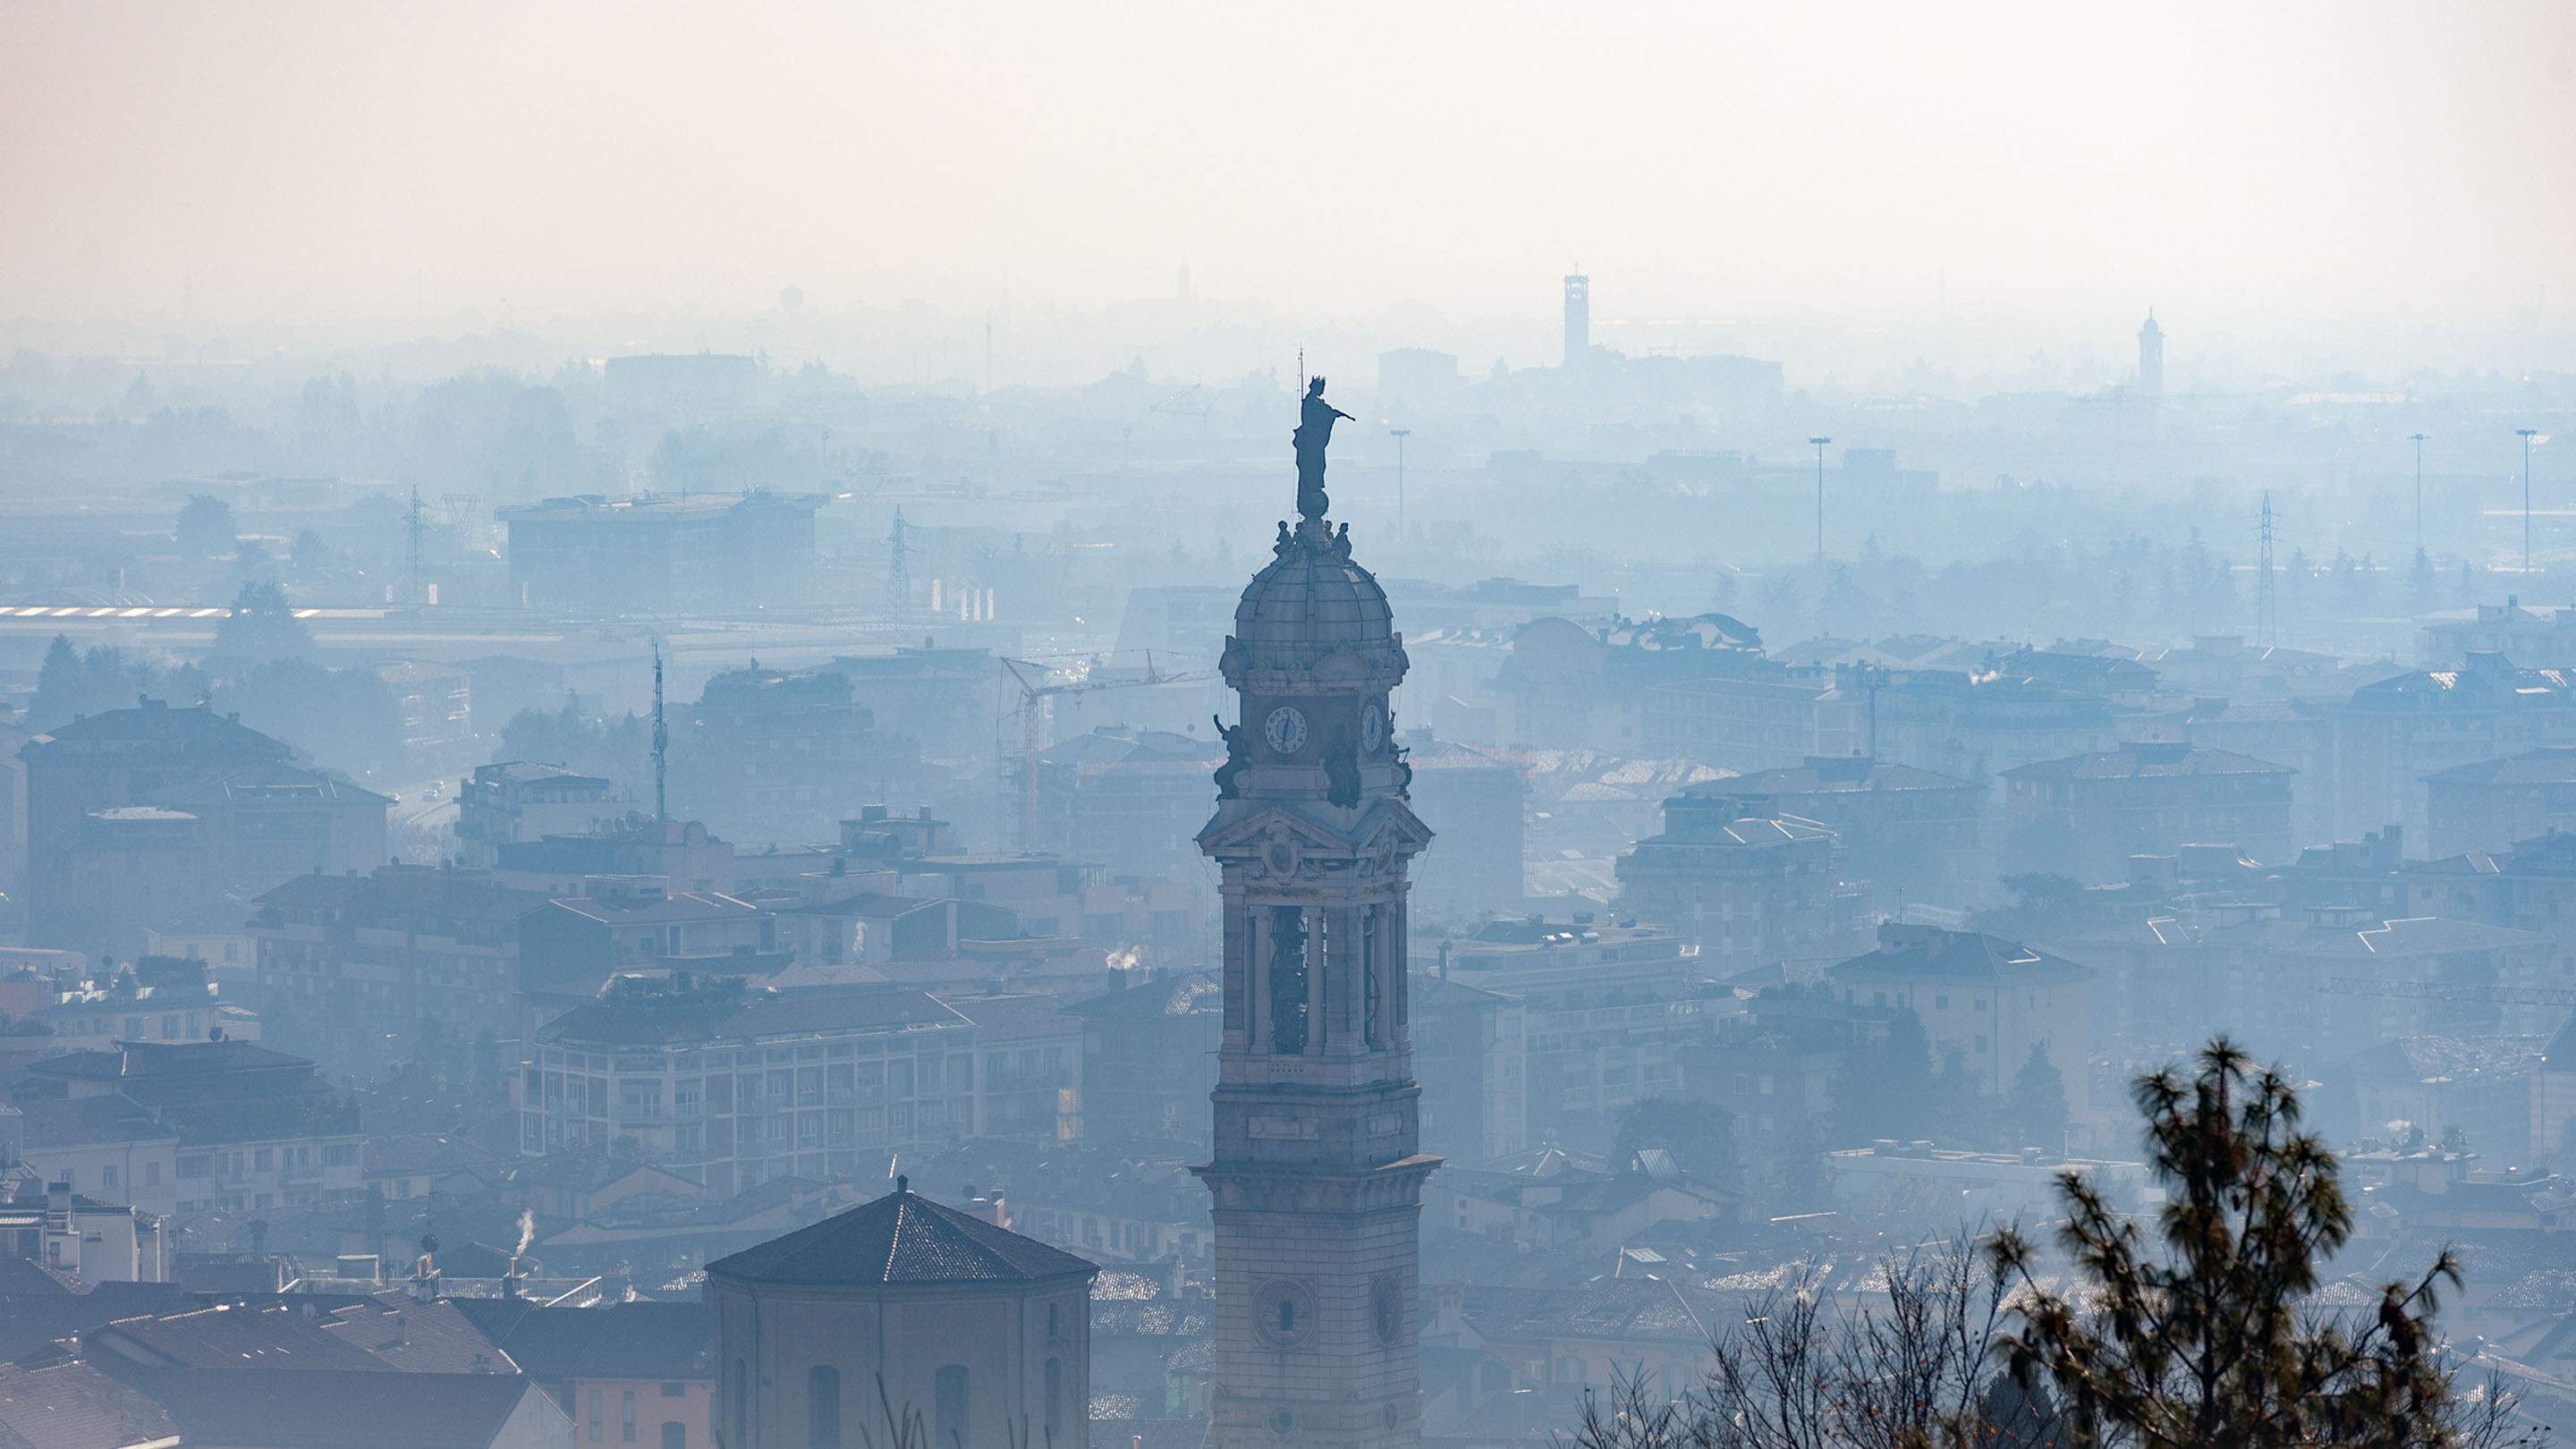 Stadt im Nebel als Symbol für Umweltverschmutzung.